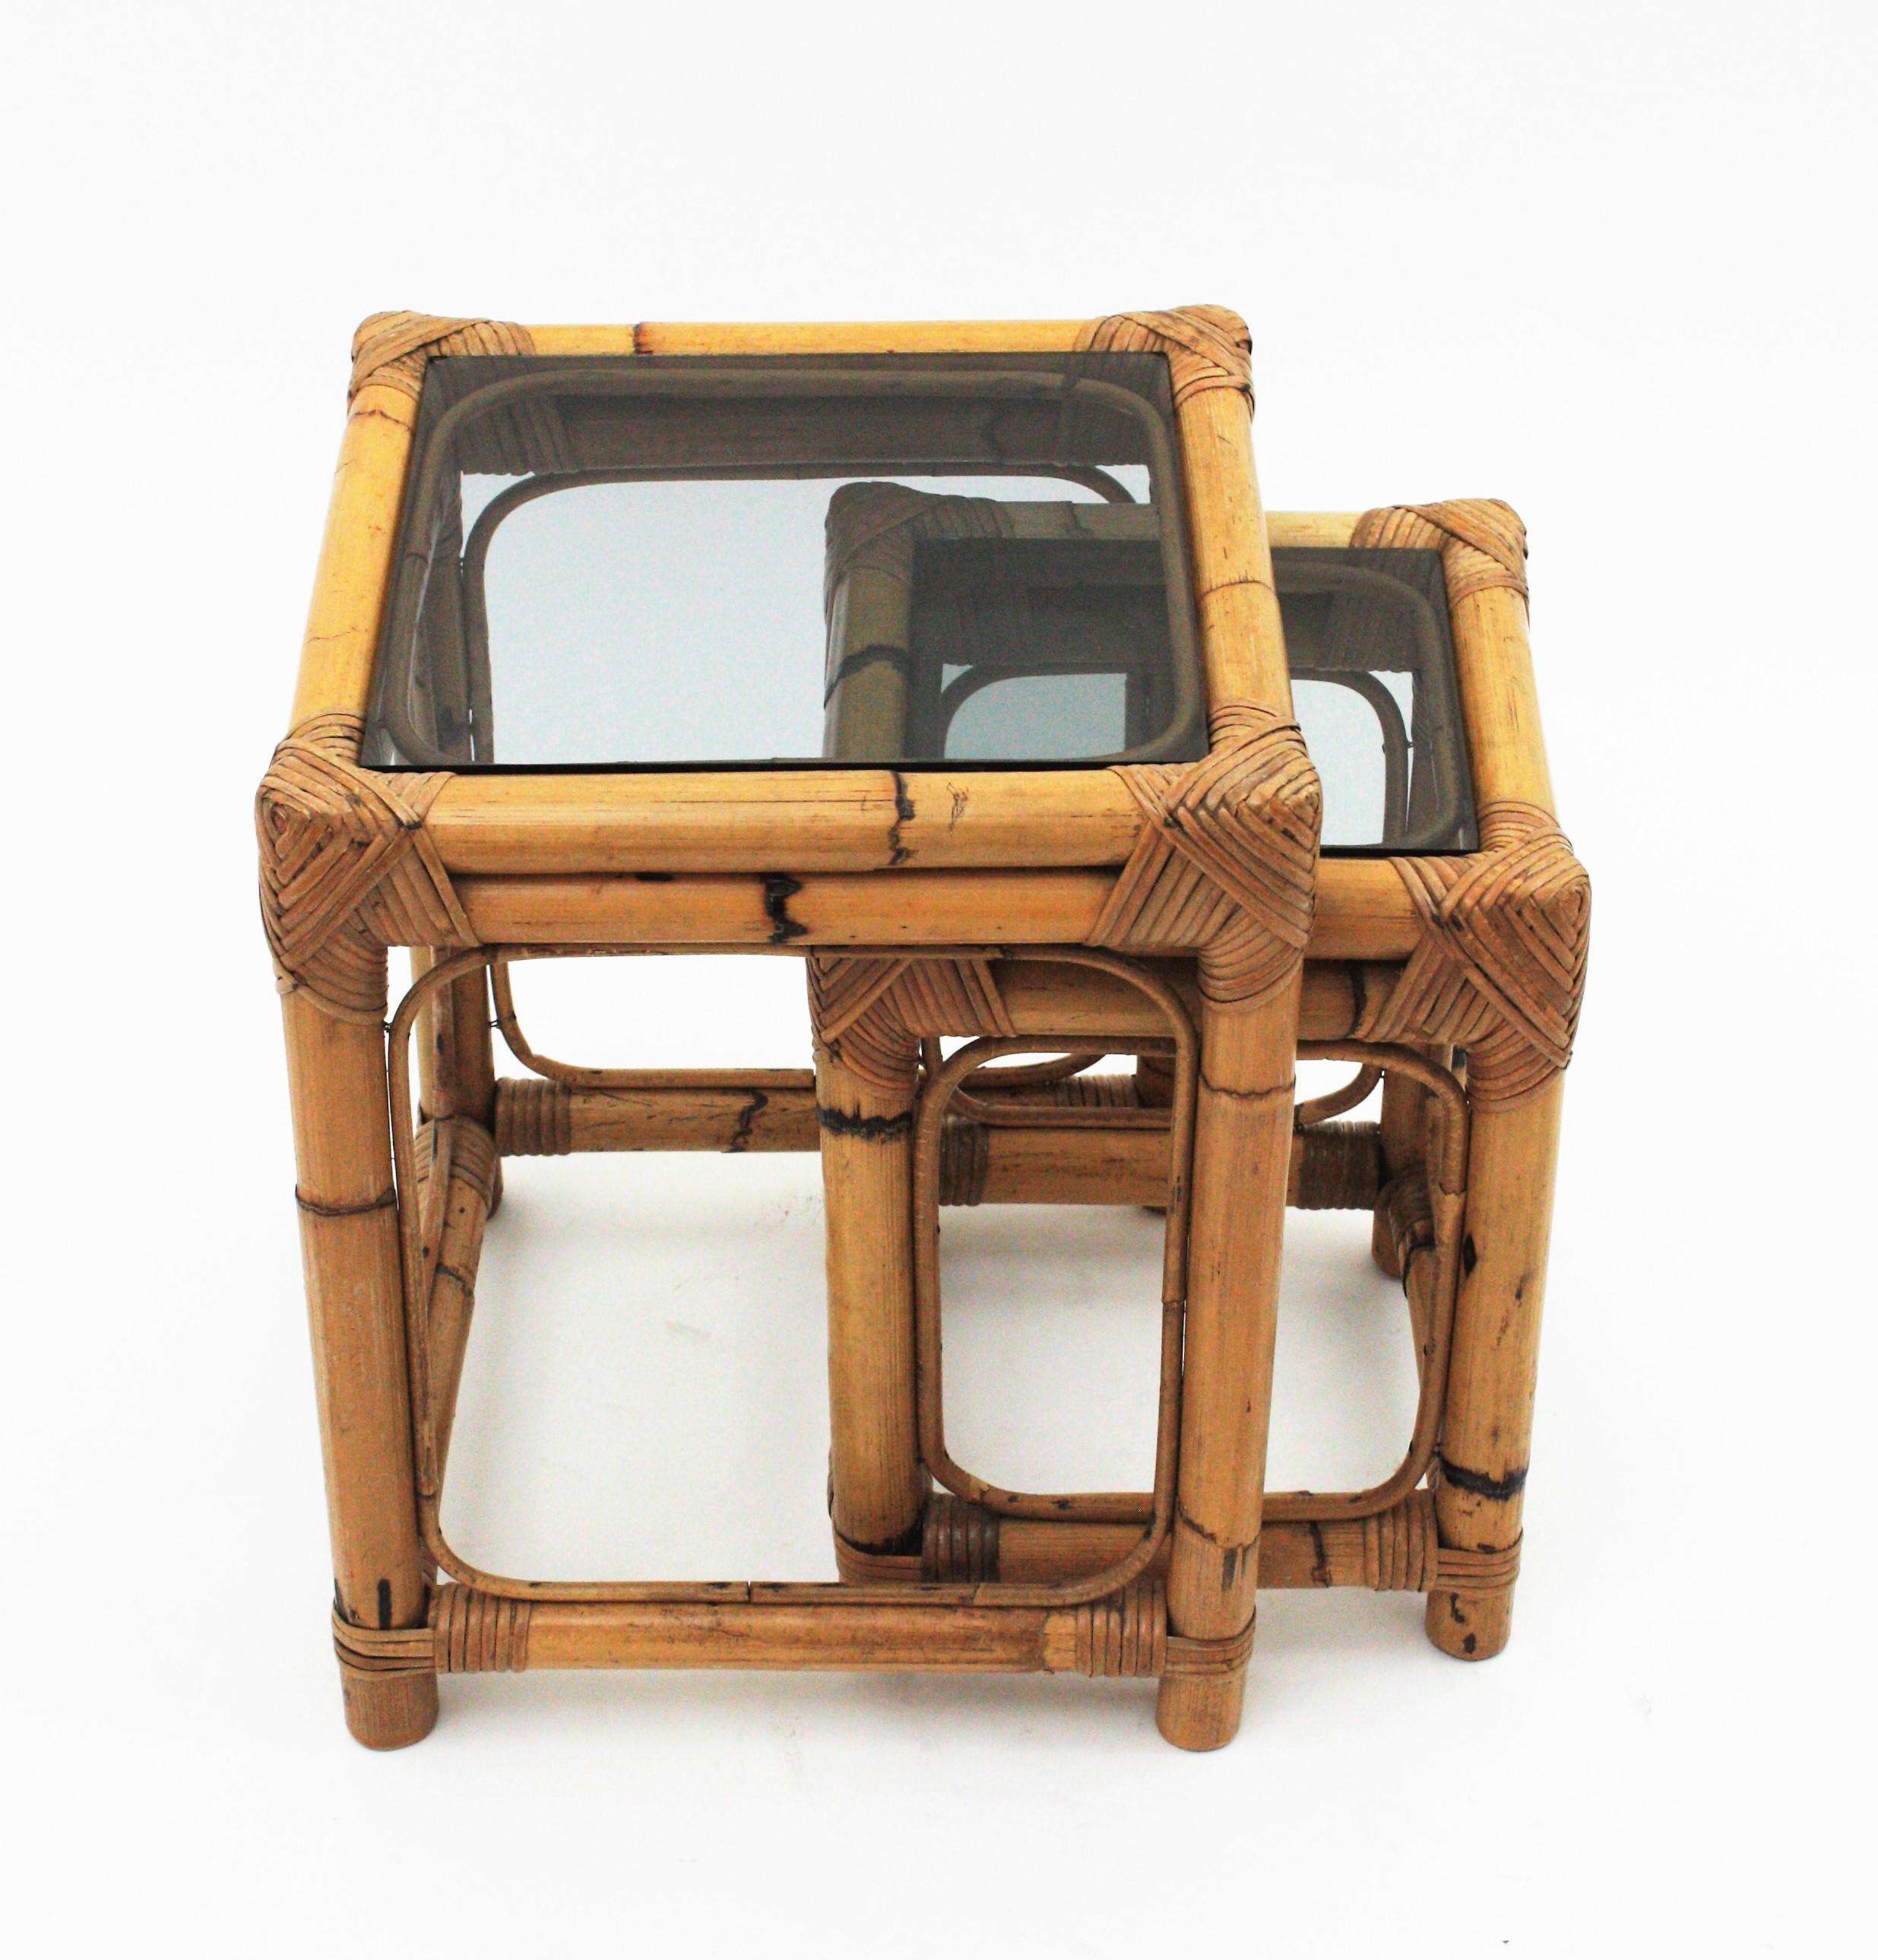 Ensemble de deux tables gigognes en bambou et verre fumé, Espagne, années 1960.
Magnifique pour être utilisé comme table d'appoint, table de chevet ou table d'extrémité. Ces tables gigognes ajouteront un accent frais et naturel à n'importe quel